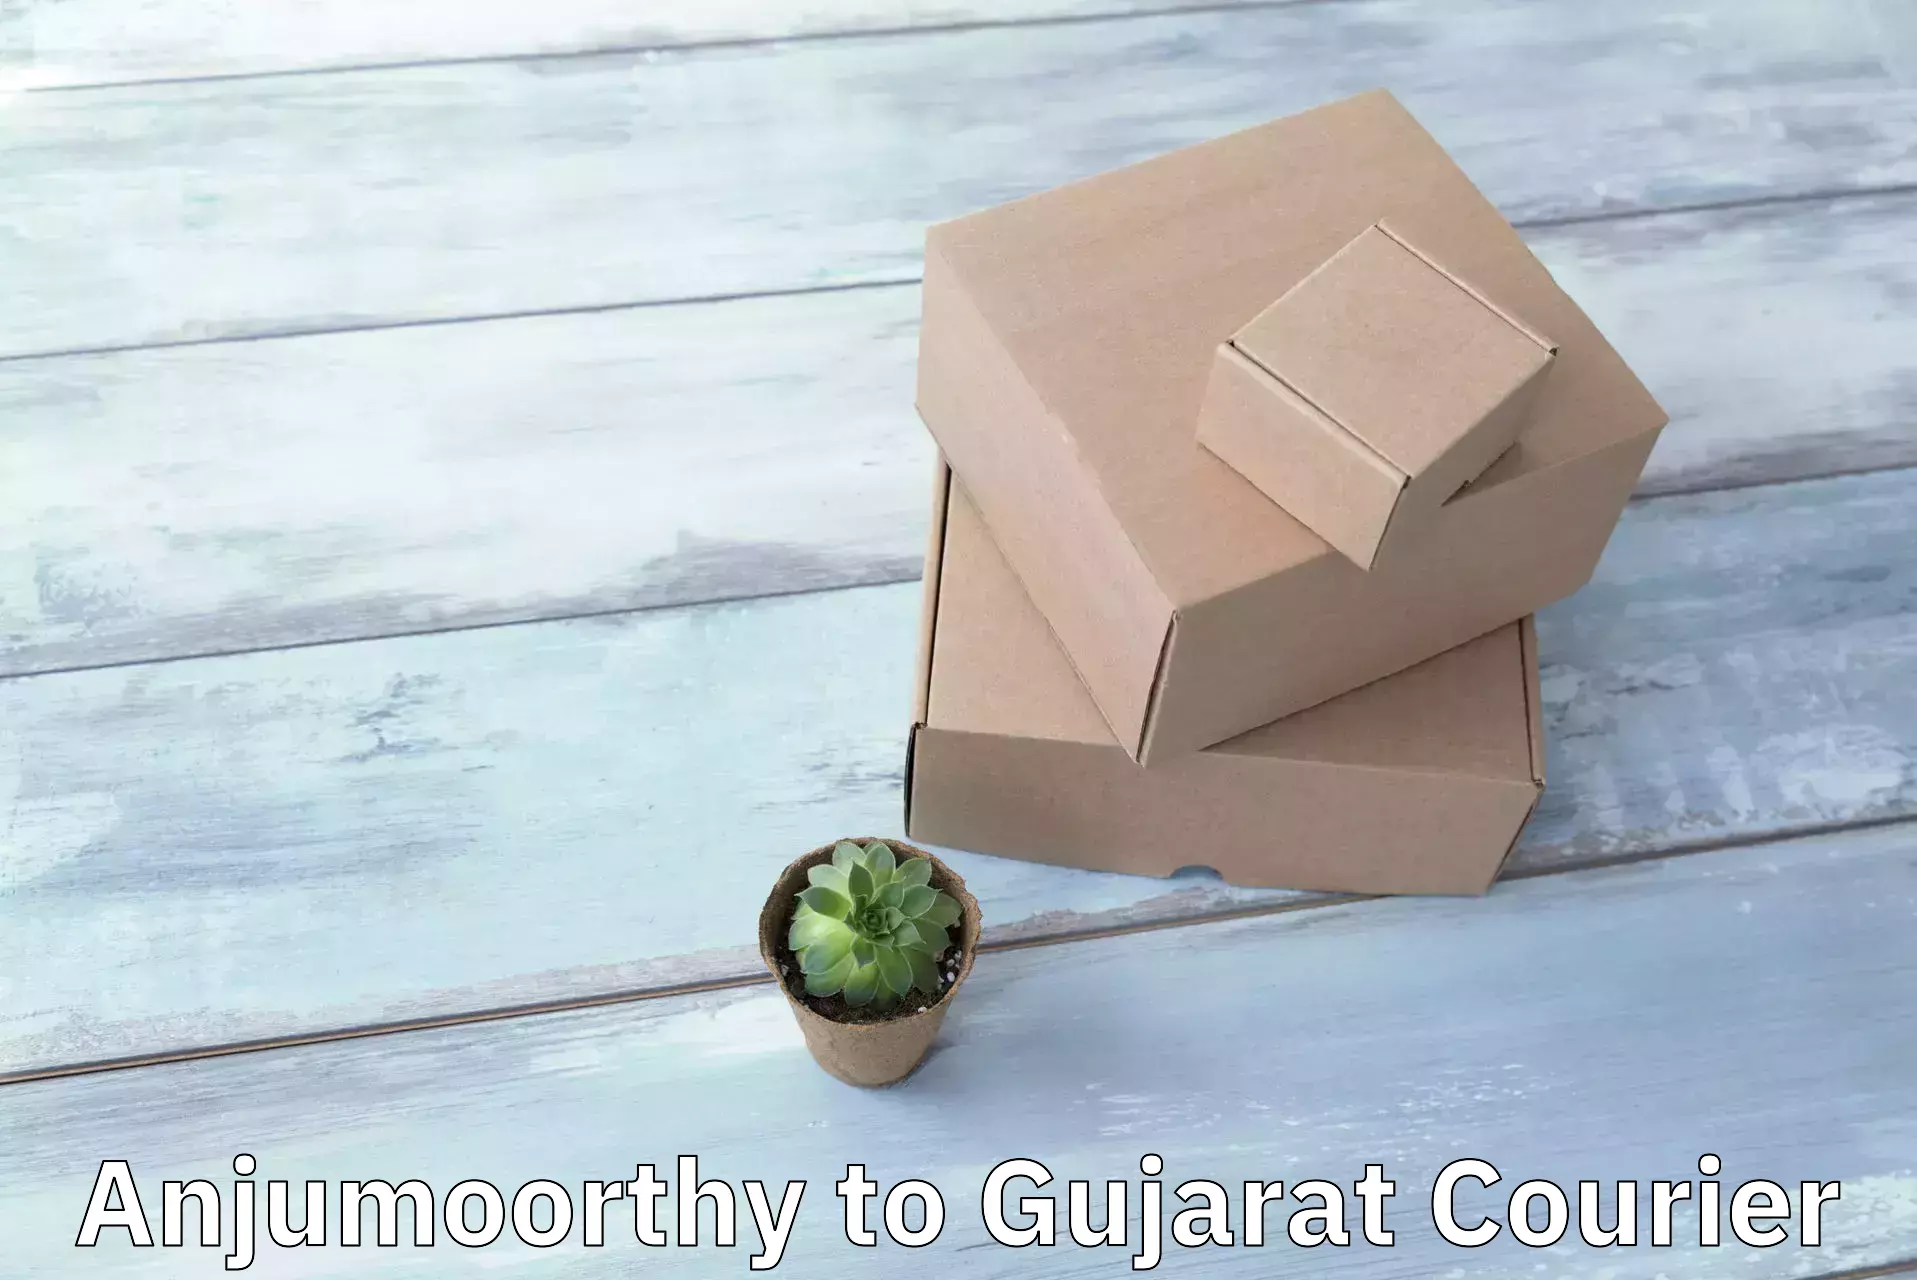 Door-to-door shipment Anjumoorthy to Gujarat